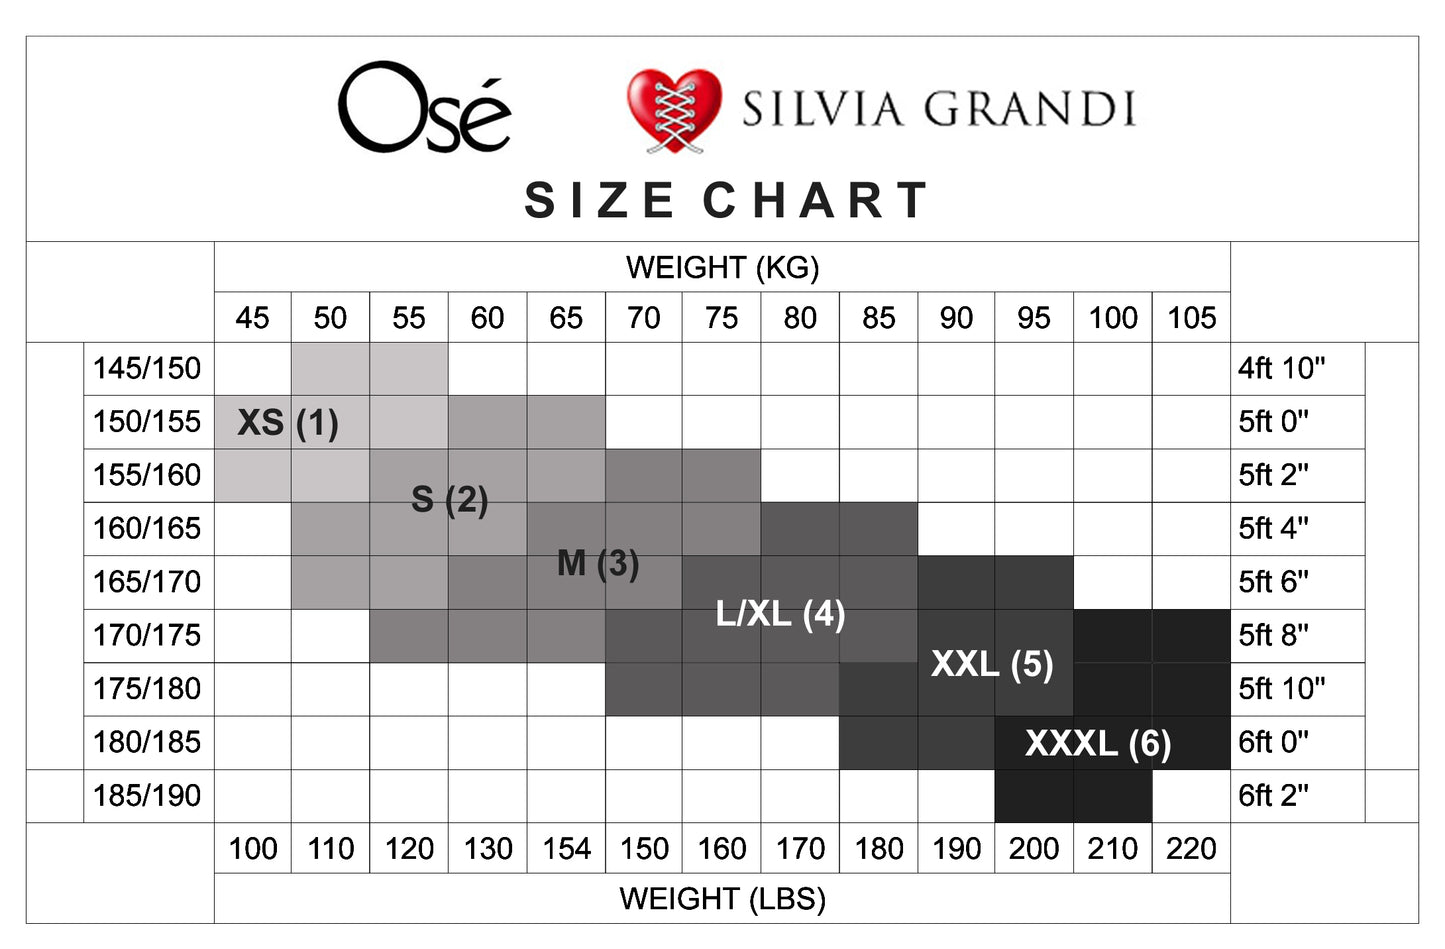 Silvia Grandi - Size Chart